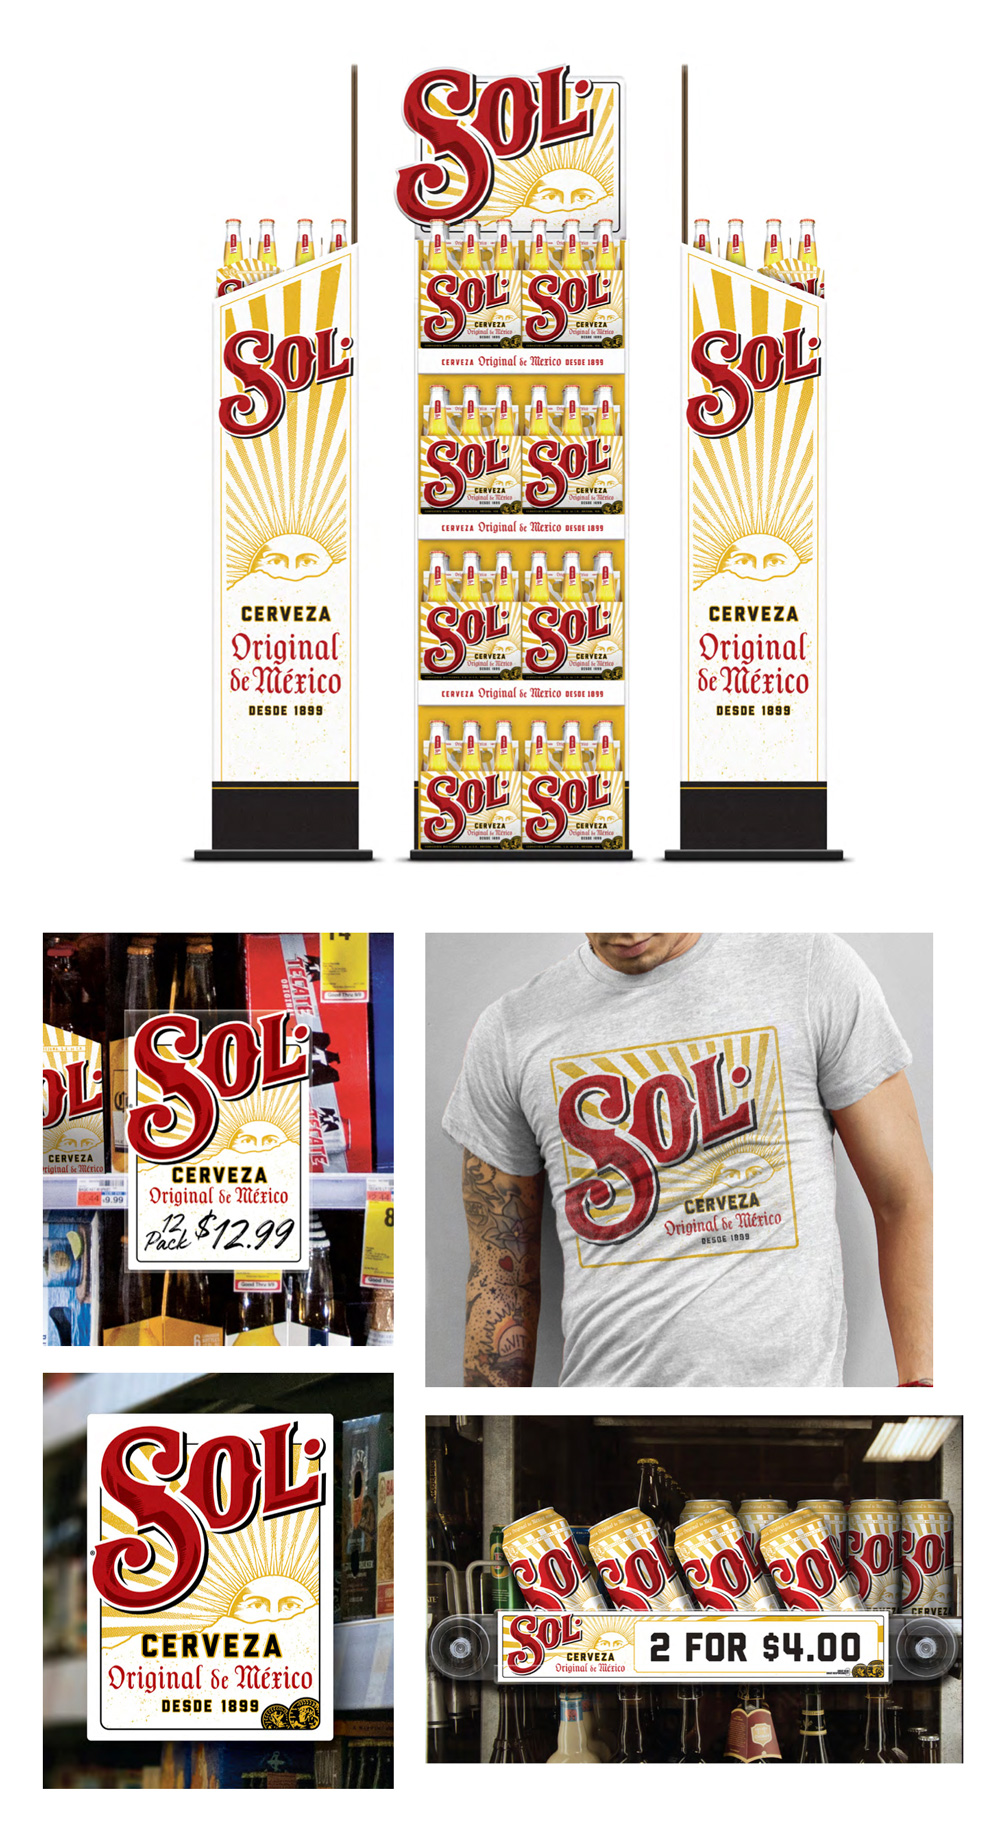 墨西哥太阳牌(sol)啤酒启用全新的品牌logo和包装设计8